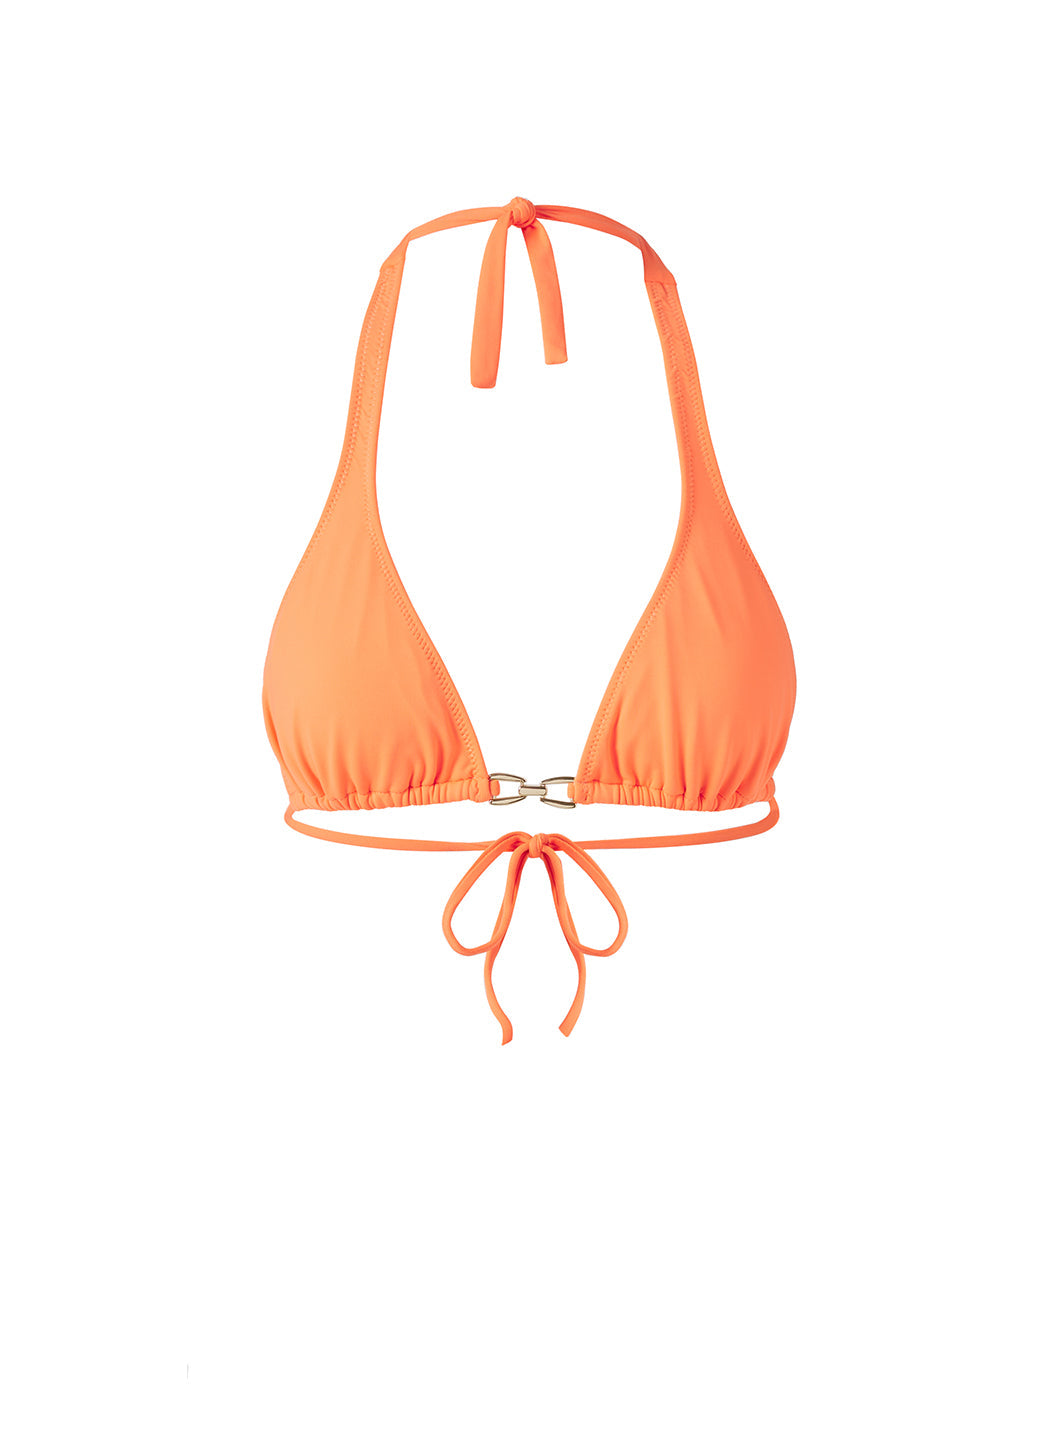 antibes-orange-bikini-top_cutout